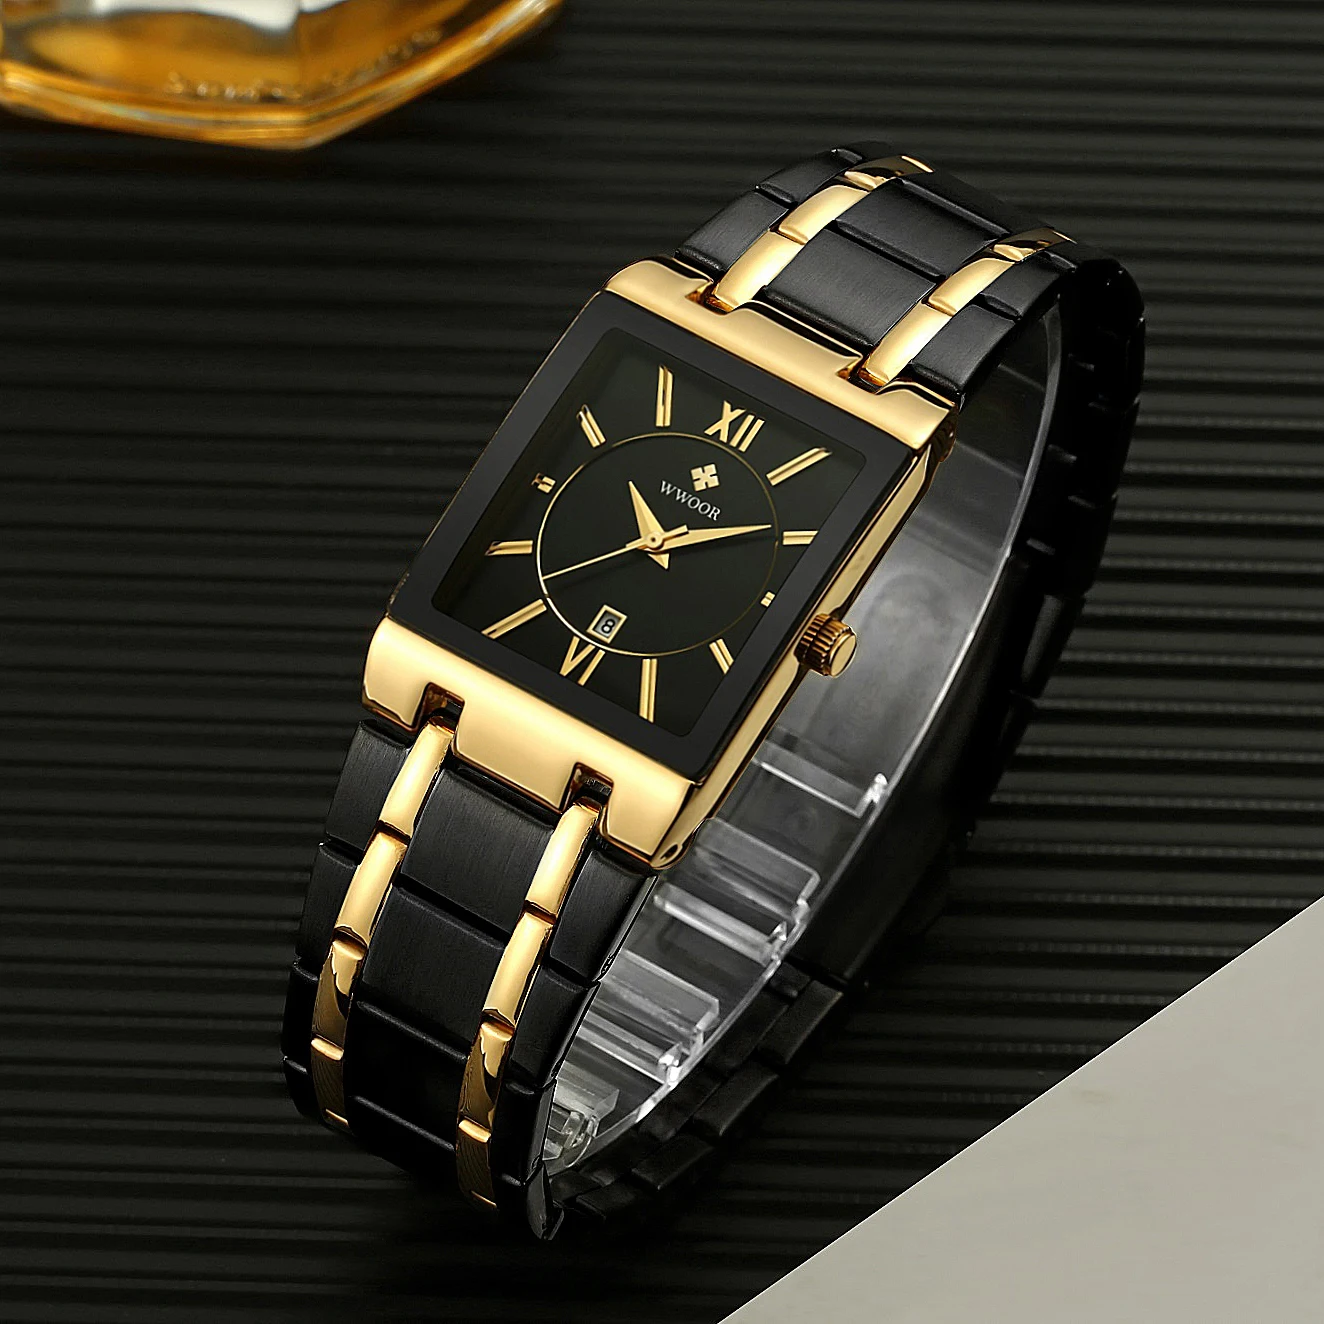 

WWOOR 8858 Branded Quartz Wrist Watch Luxury Stainless Steel Relogio Masculino Mens Watches